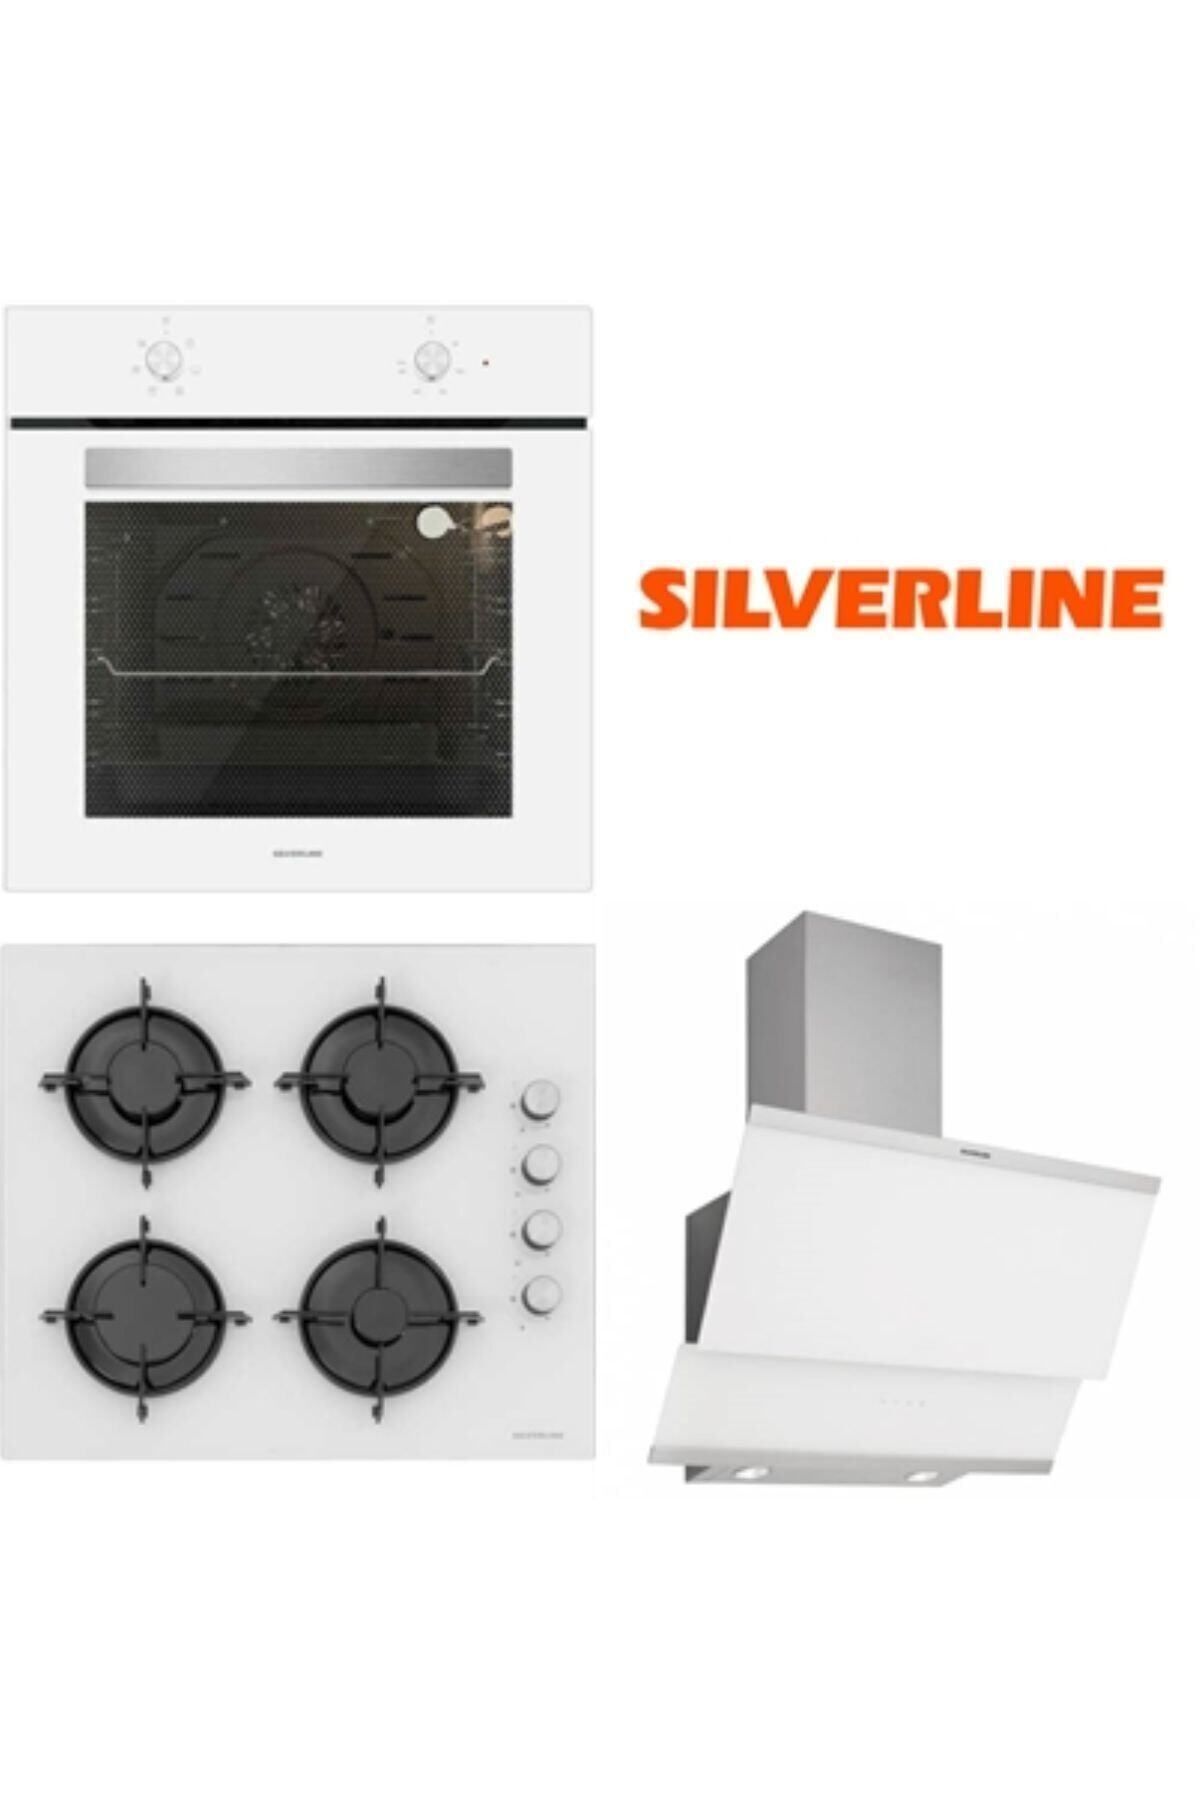 Silverline Beyaz Cam Ankastre Set BO6501W01 - CS5349W01 - 3420 Classy